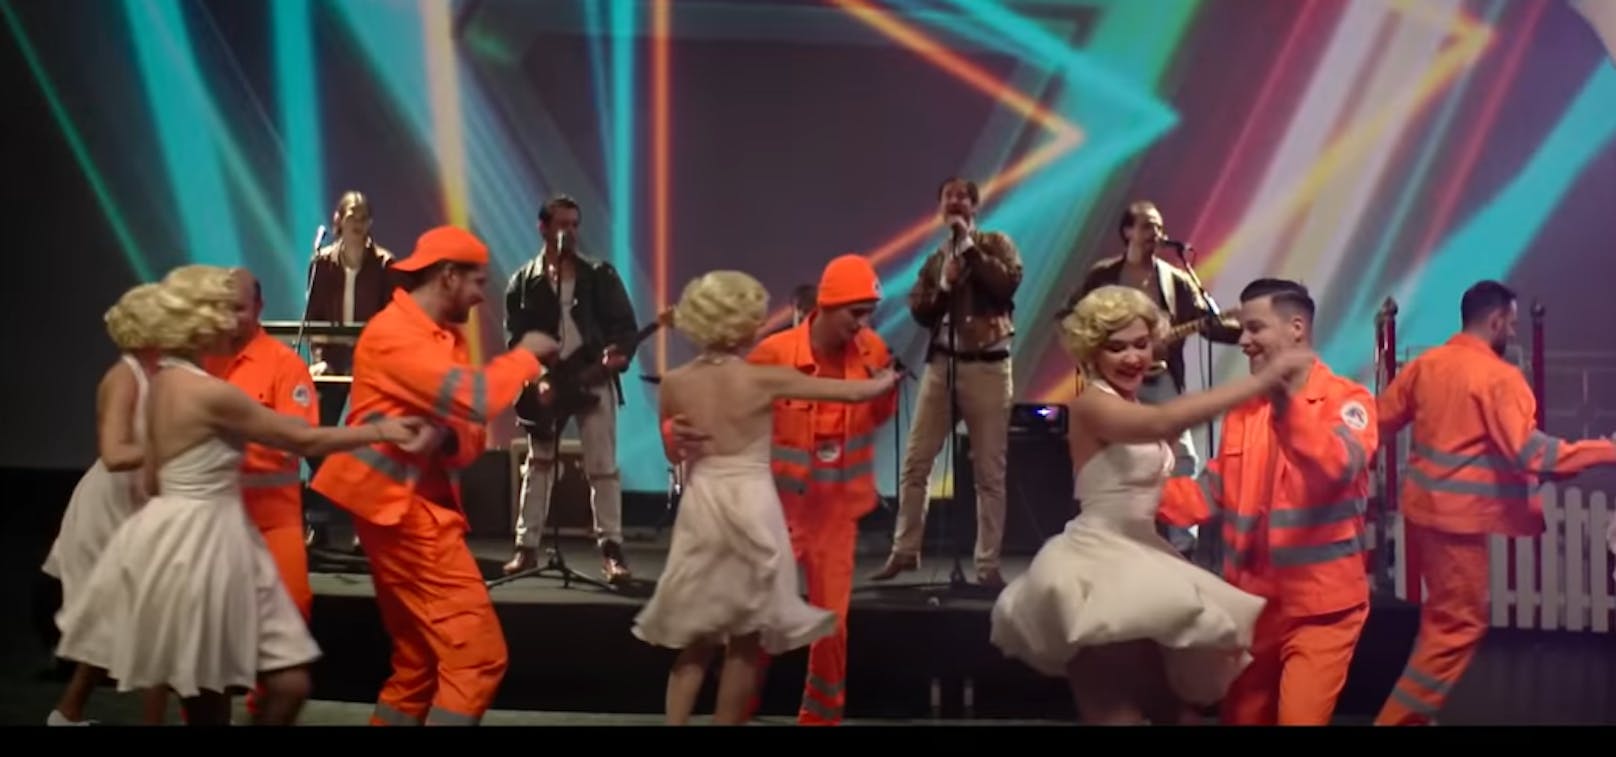 Voller Körpereinsatz auf der Bühne. Die Wanda-Tänzer sind im Video im MA48-orange zu sehen.